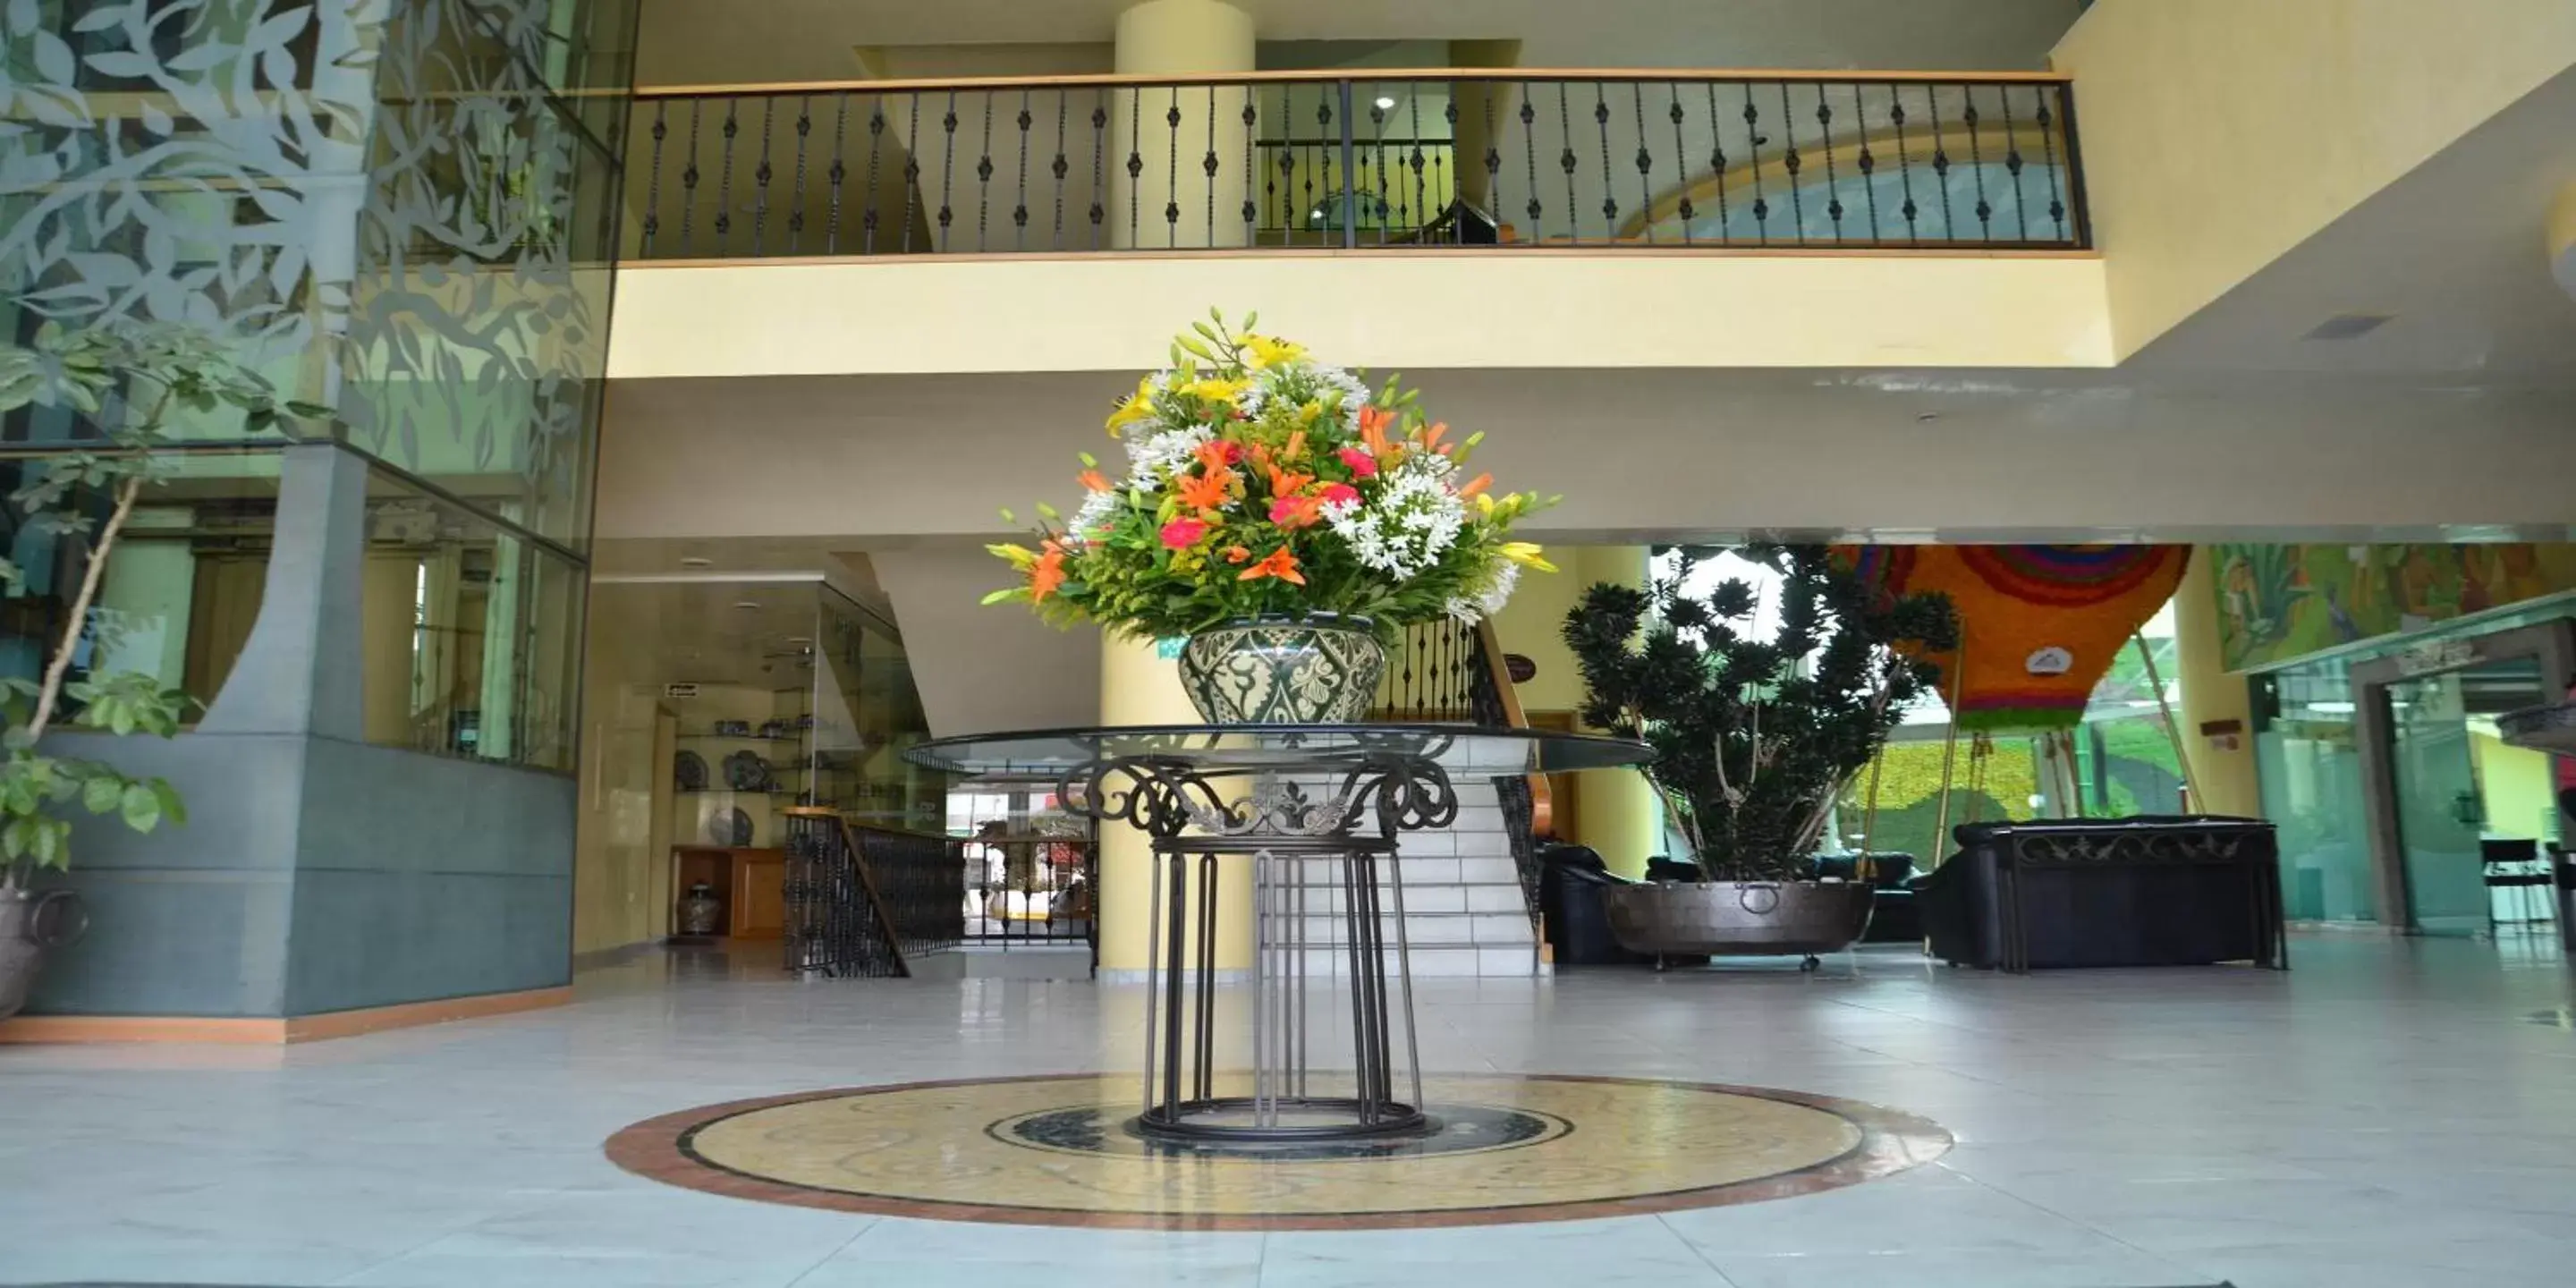 Lobby or reception, Lobby/Reception in Plaza Poblana